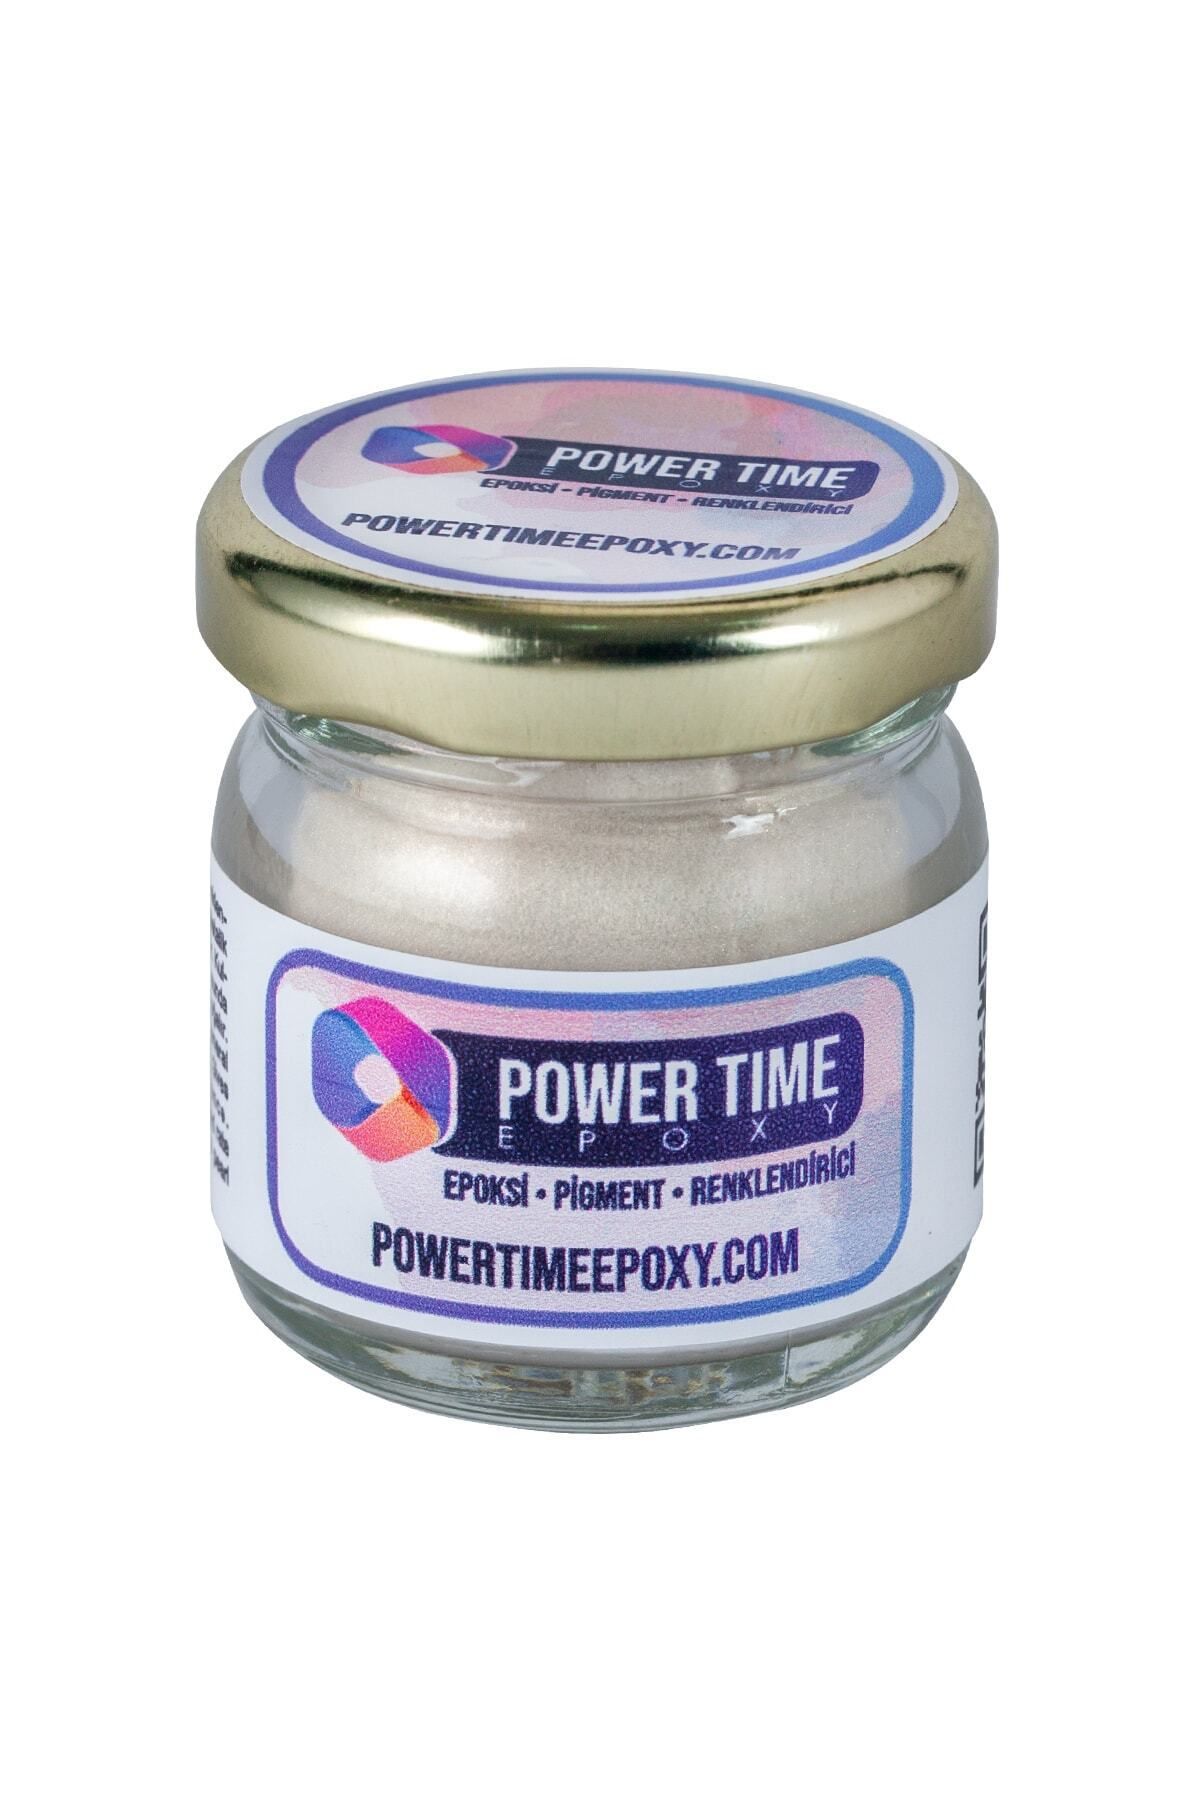 POWER TIME EPOXY Sedefli Metalik Toz Pigment Boya / Inci / Epoksi Için